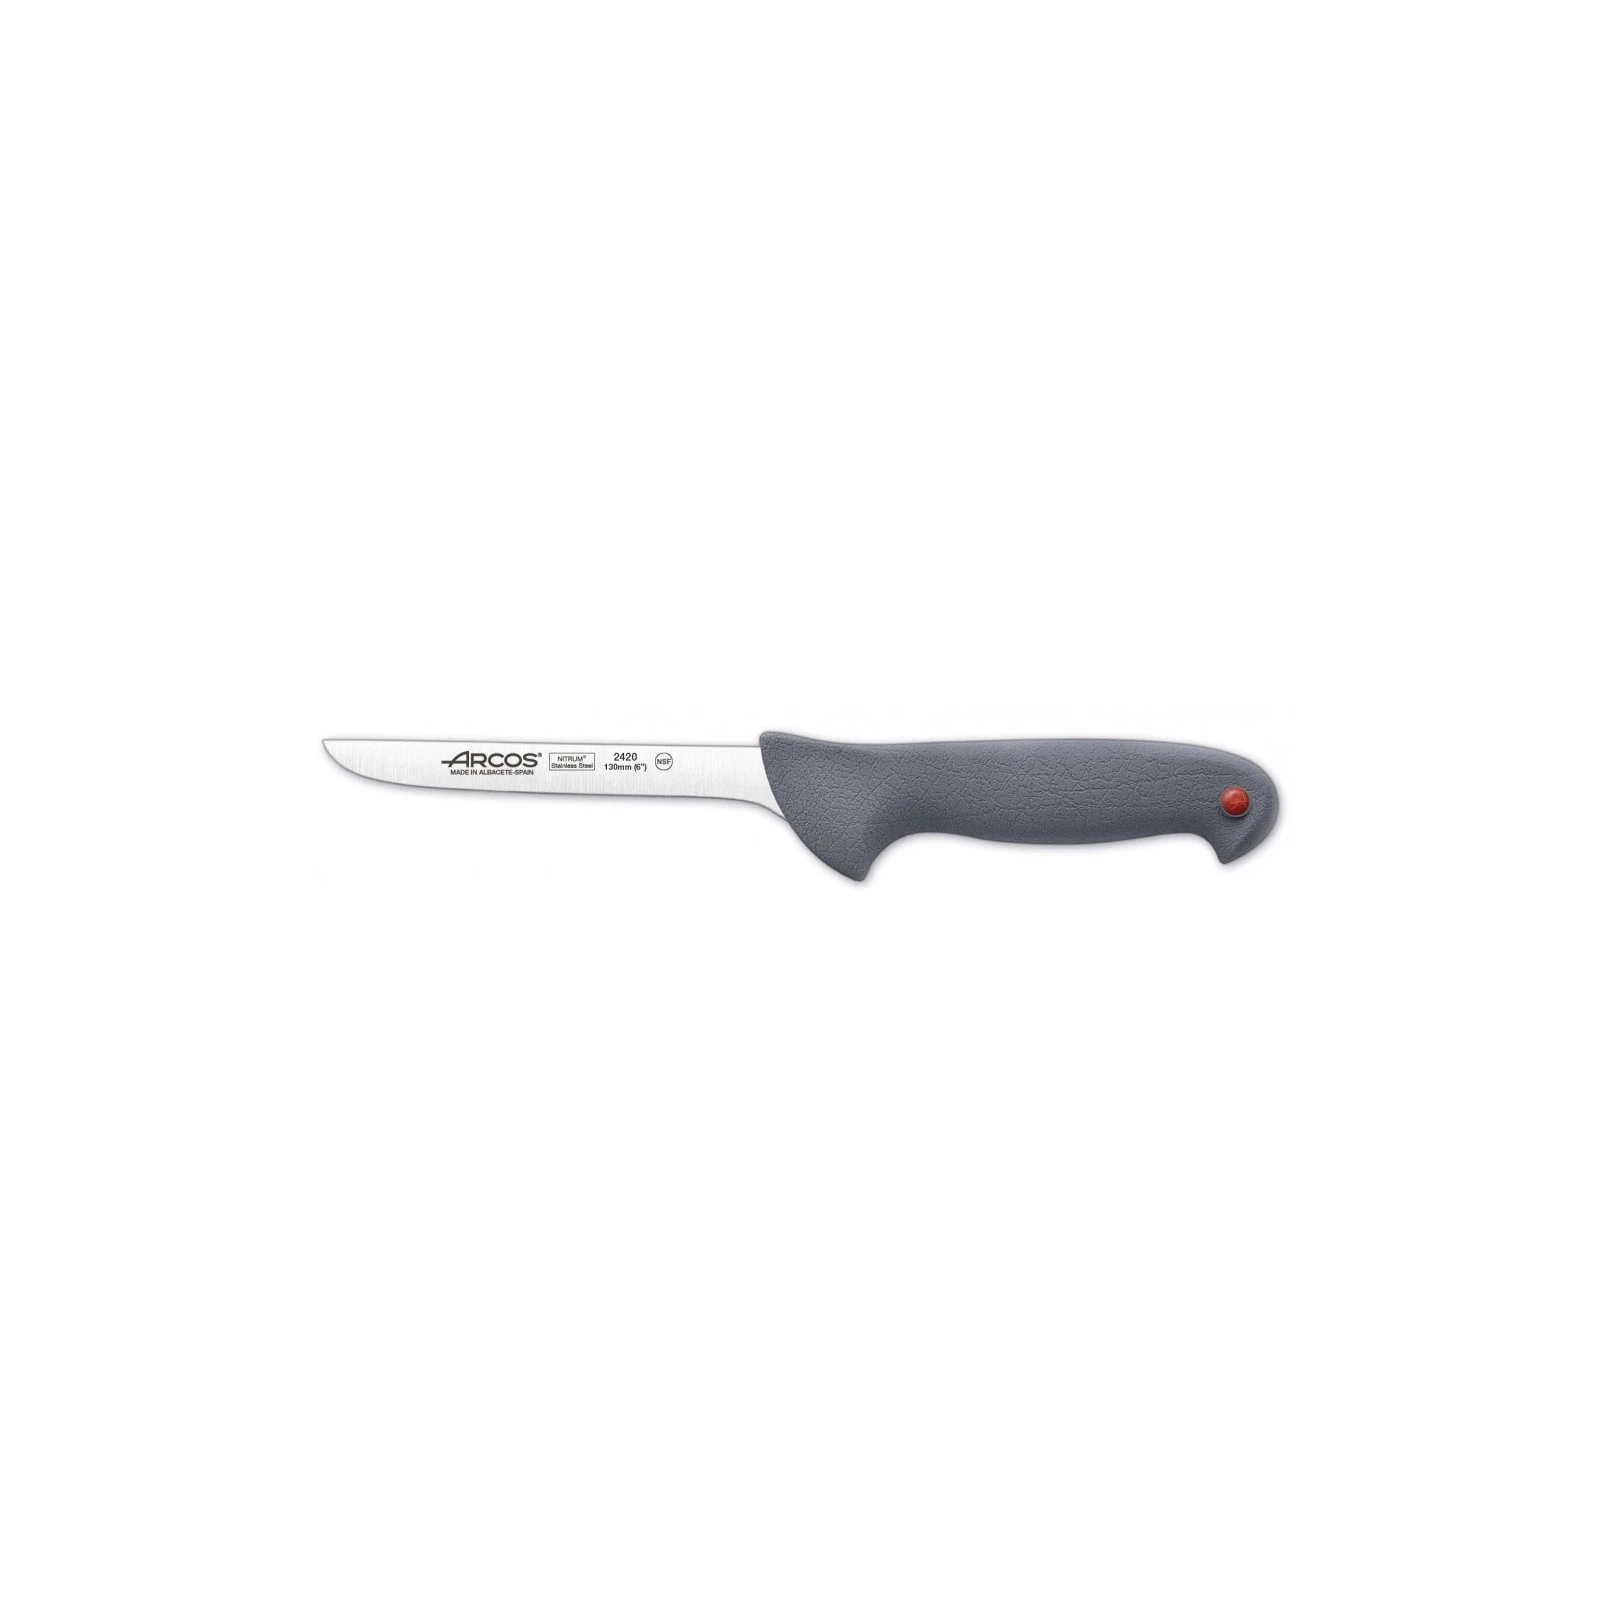 Кухонный нож Arcos Сolour-prof обвалювальний 130 мм (242000) изображение 2